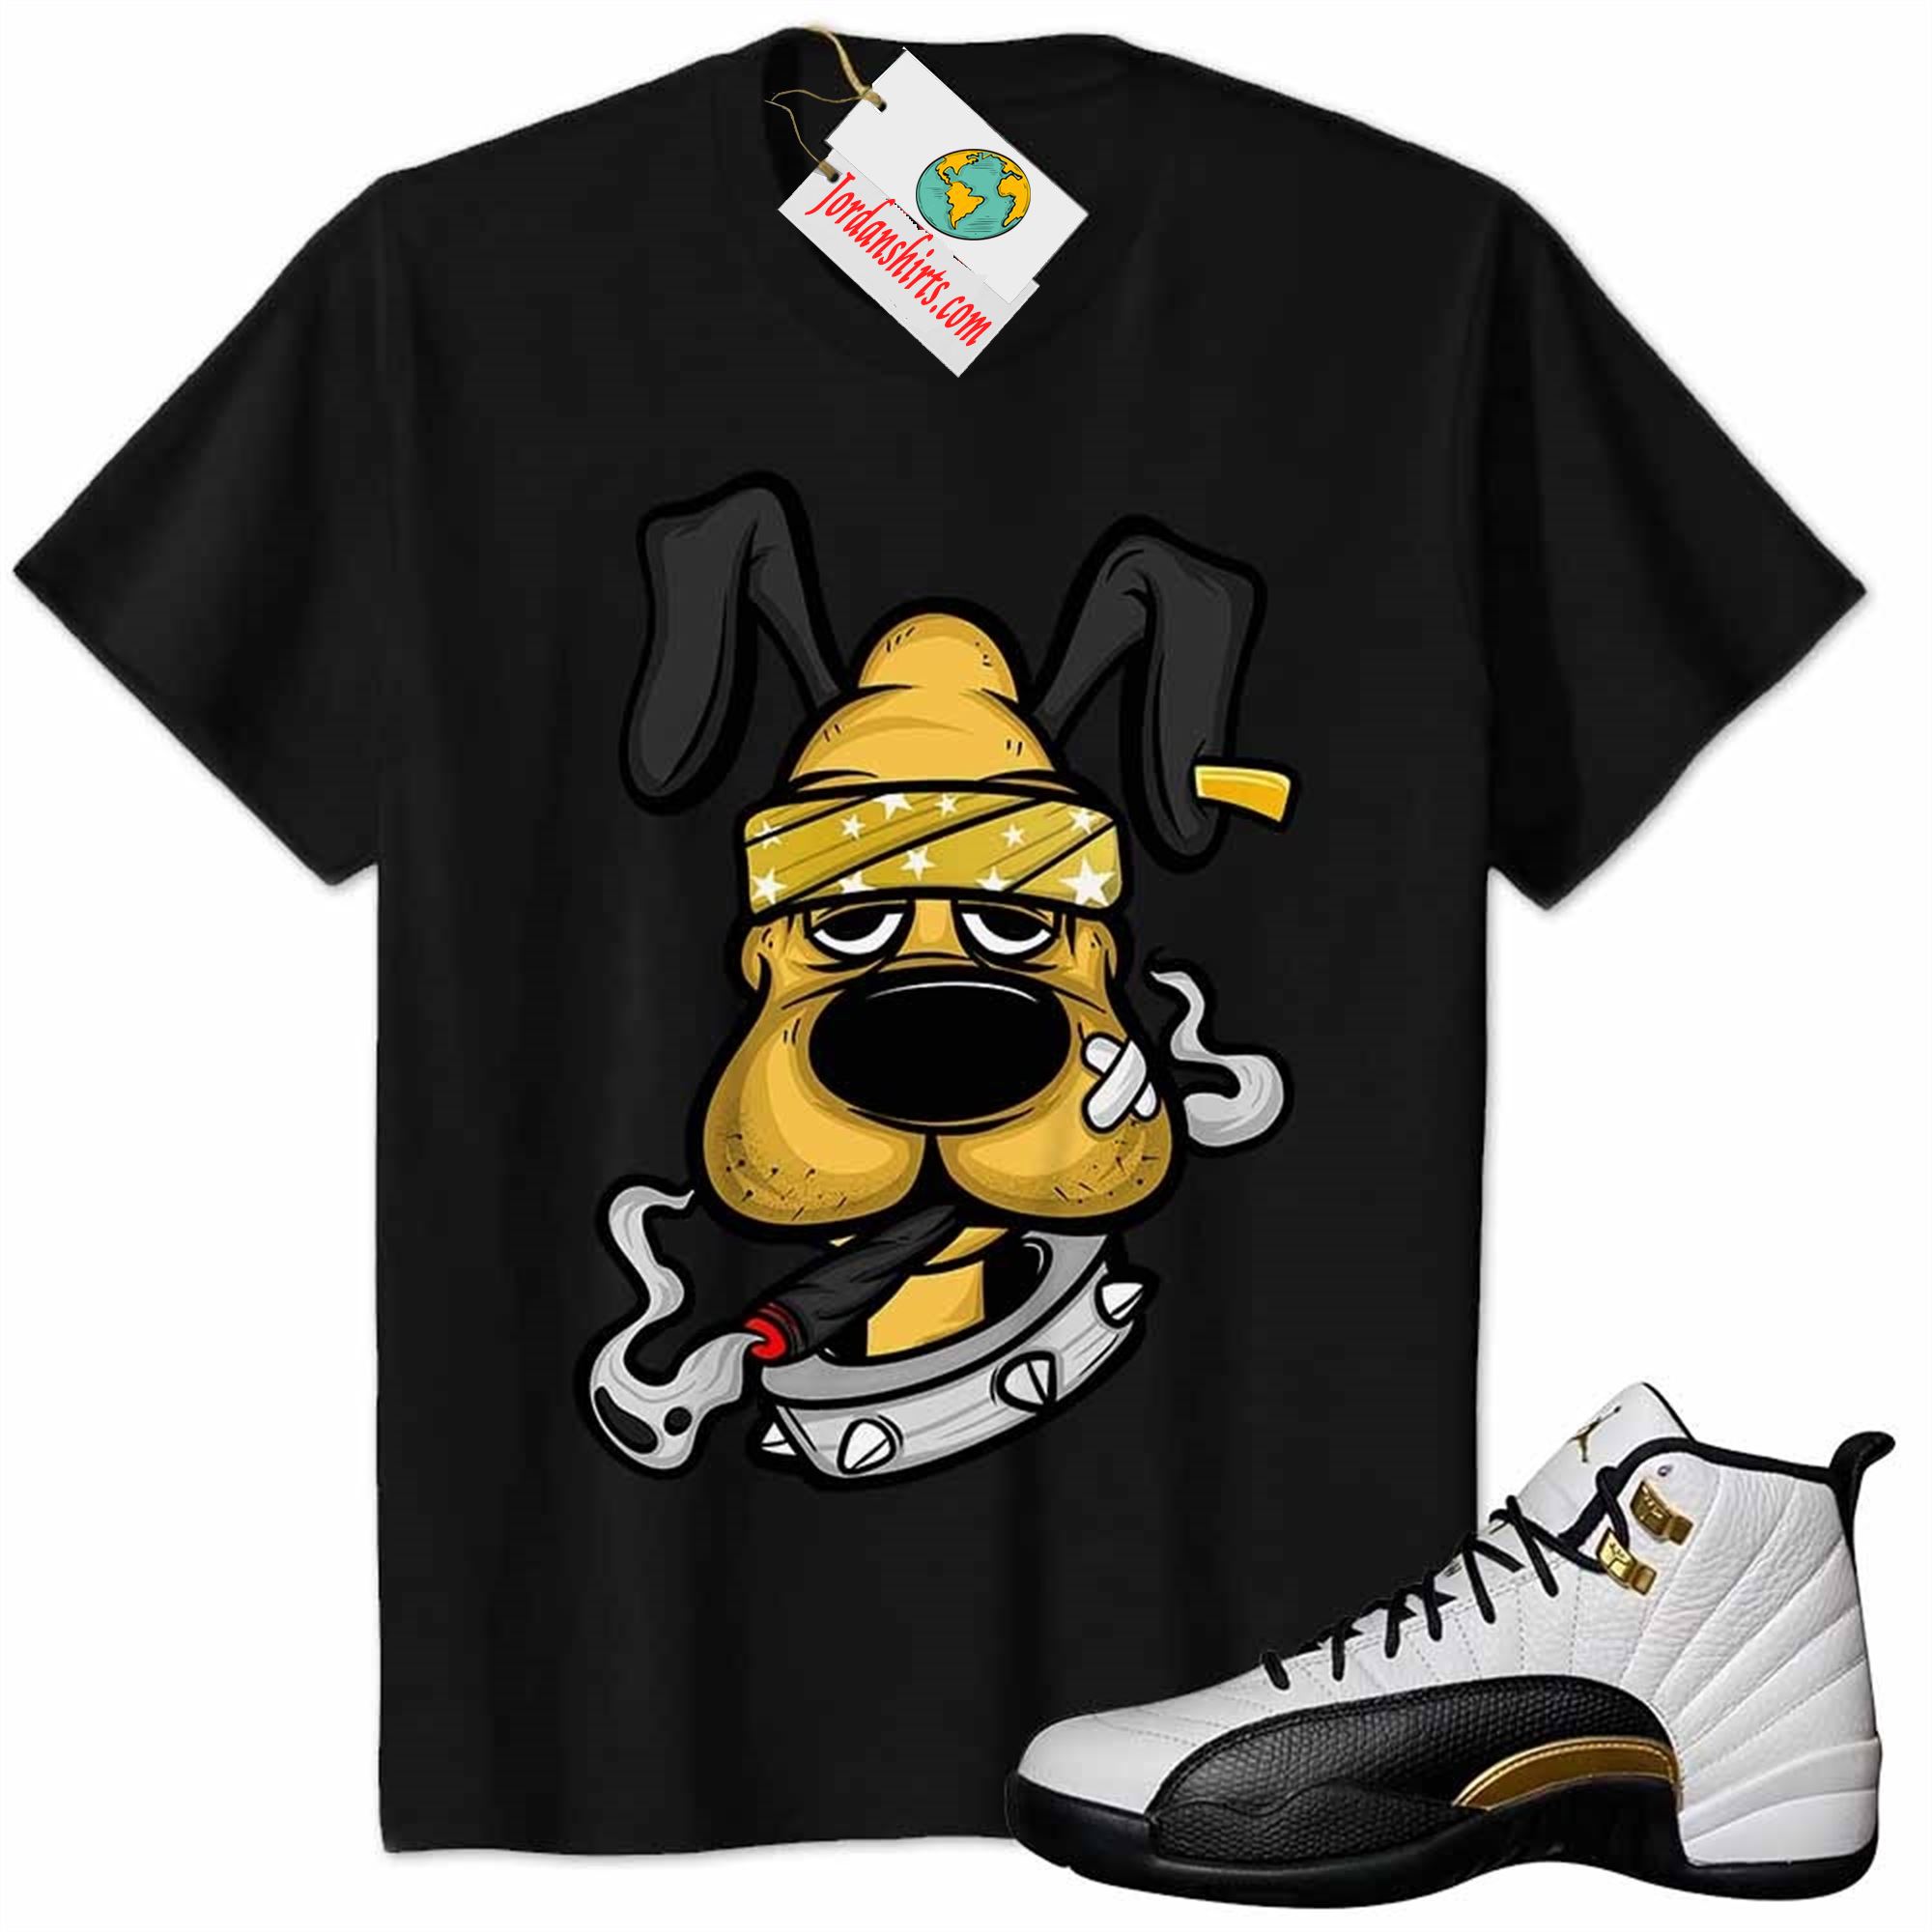 Jordan 12 Shirt, Gangster Pluto Smoke Weed Black Air Jordan 12 Royalty 12s Plus Size Up To 5xl